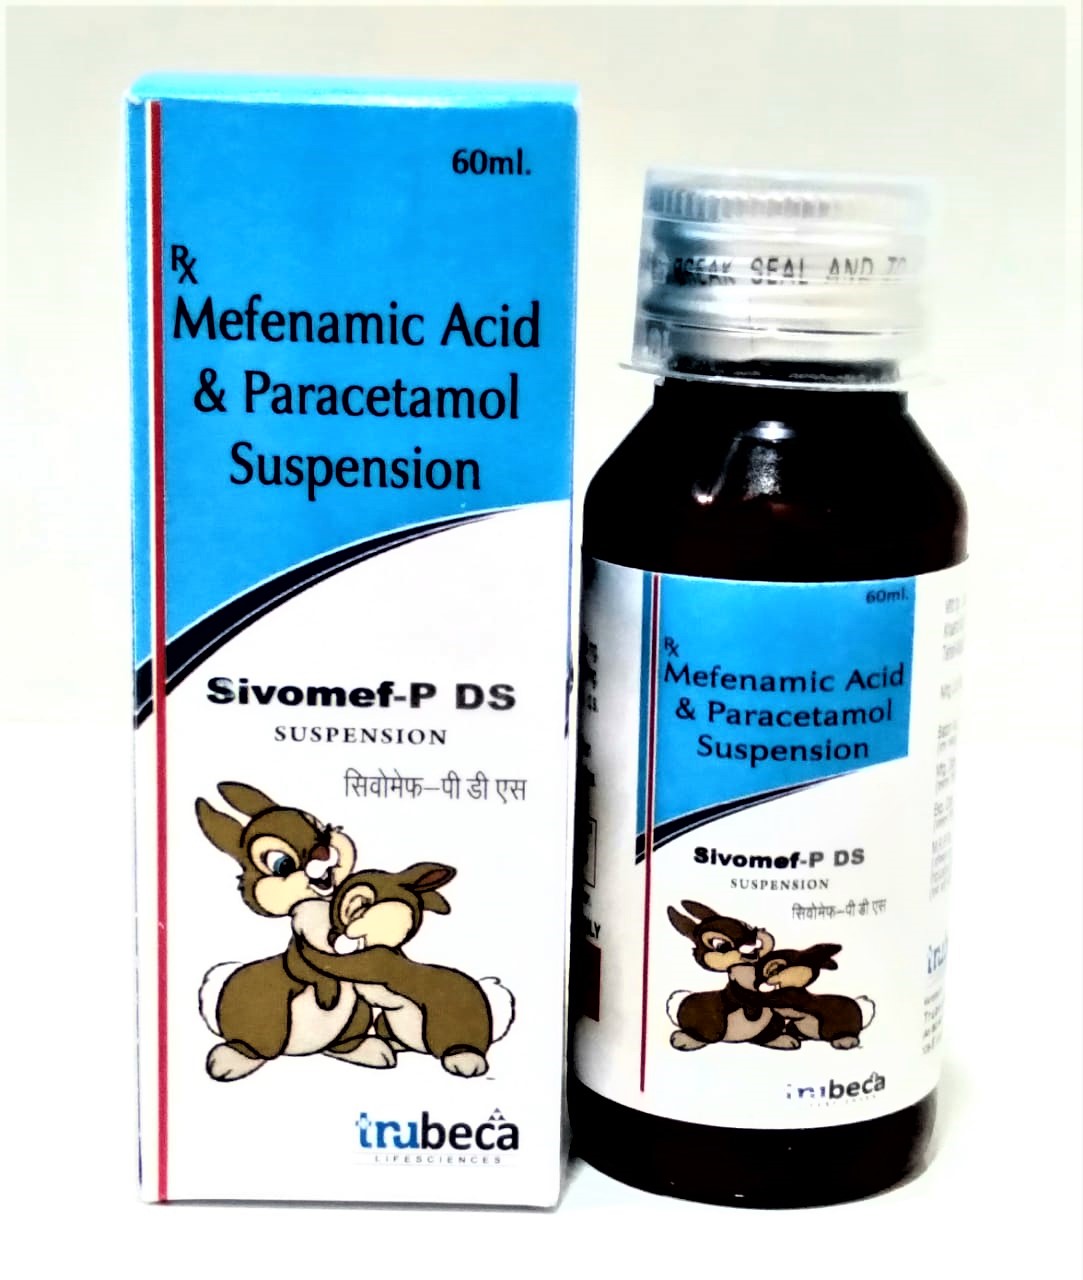 mefenamic acid 100mg + paracetamol 250mg suspension with monocarton